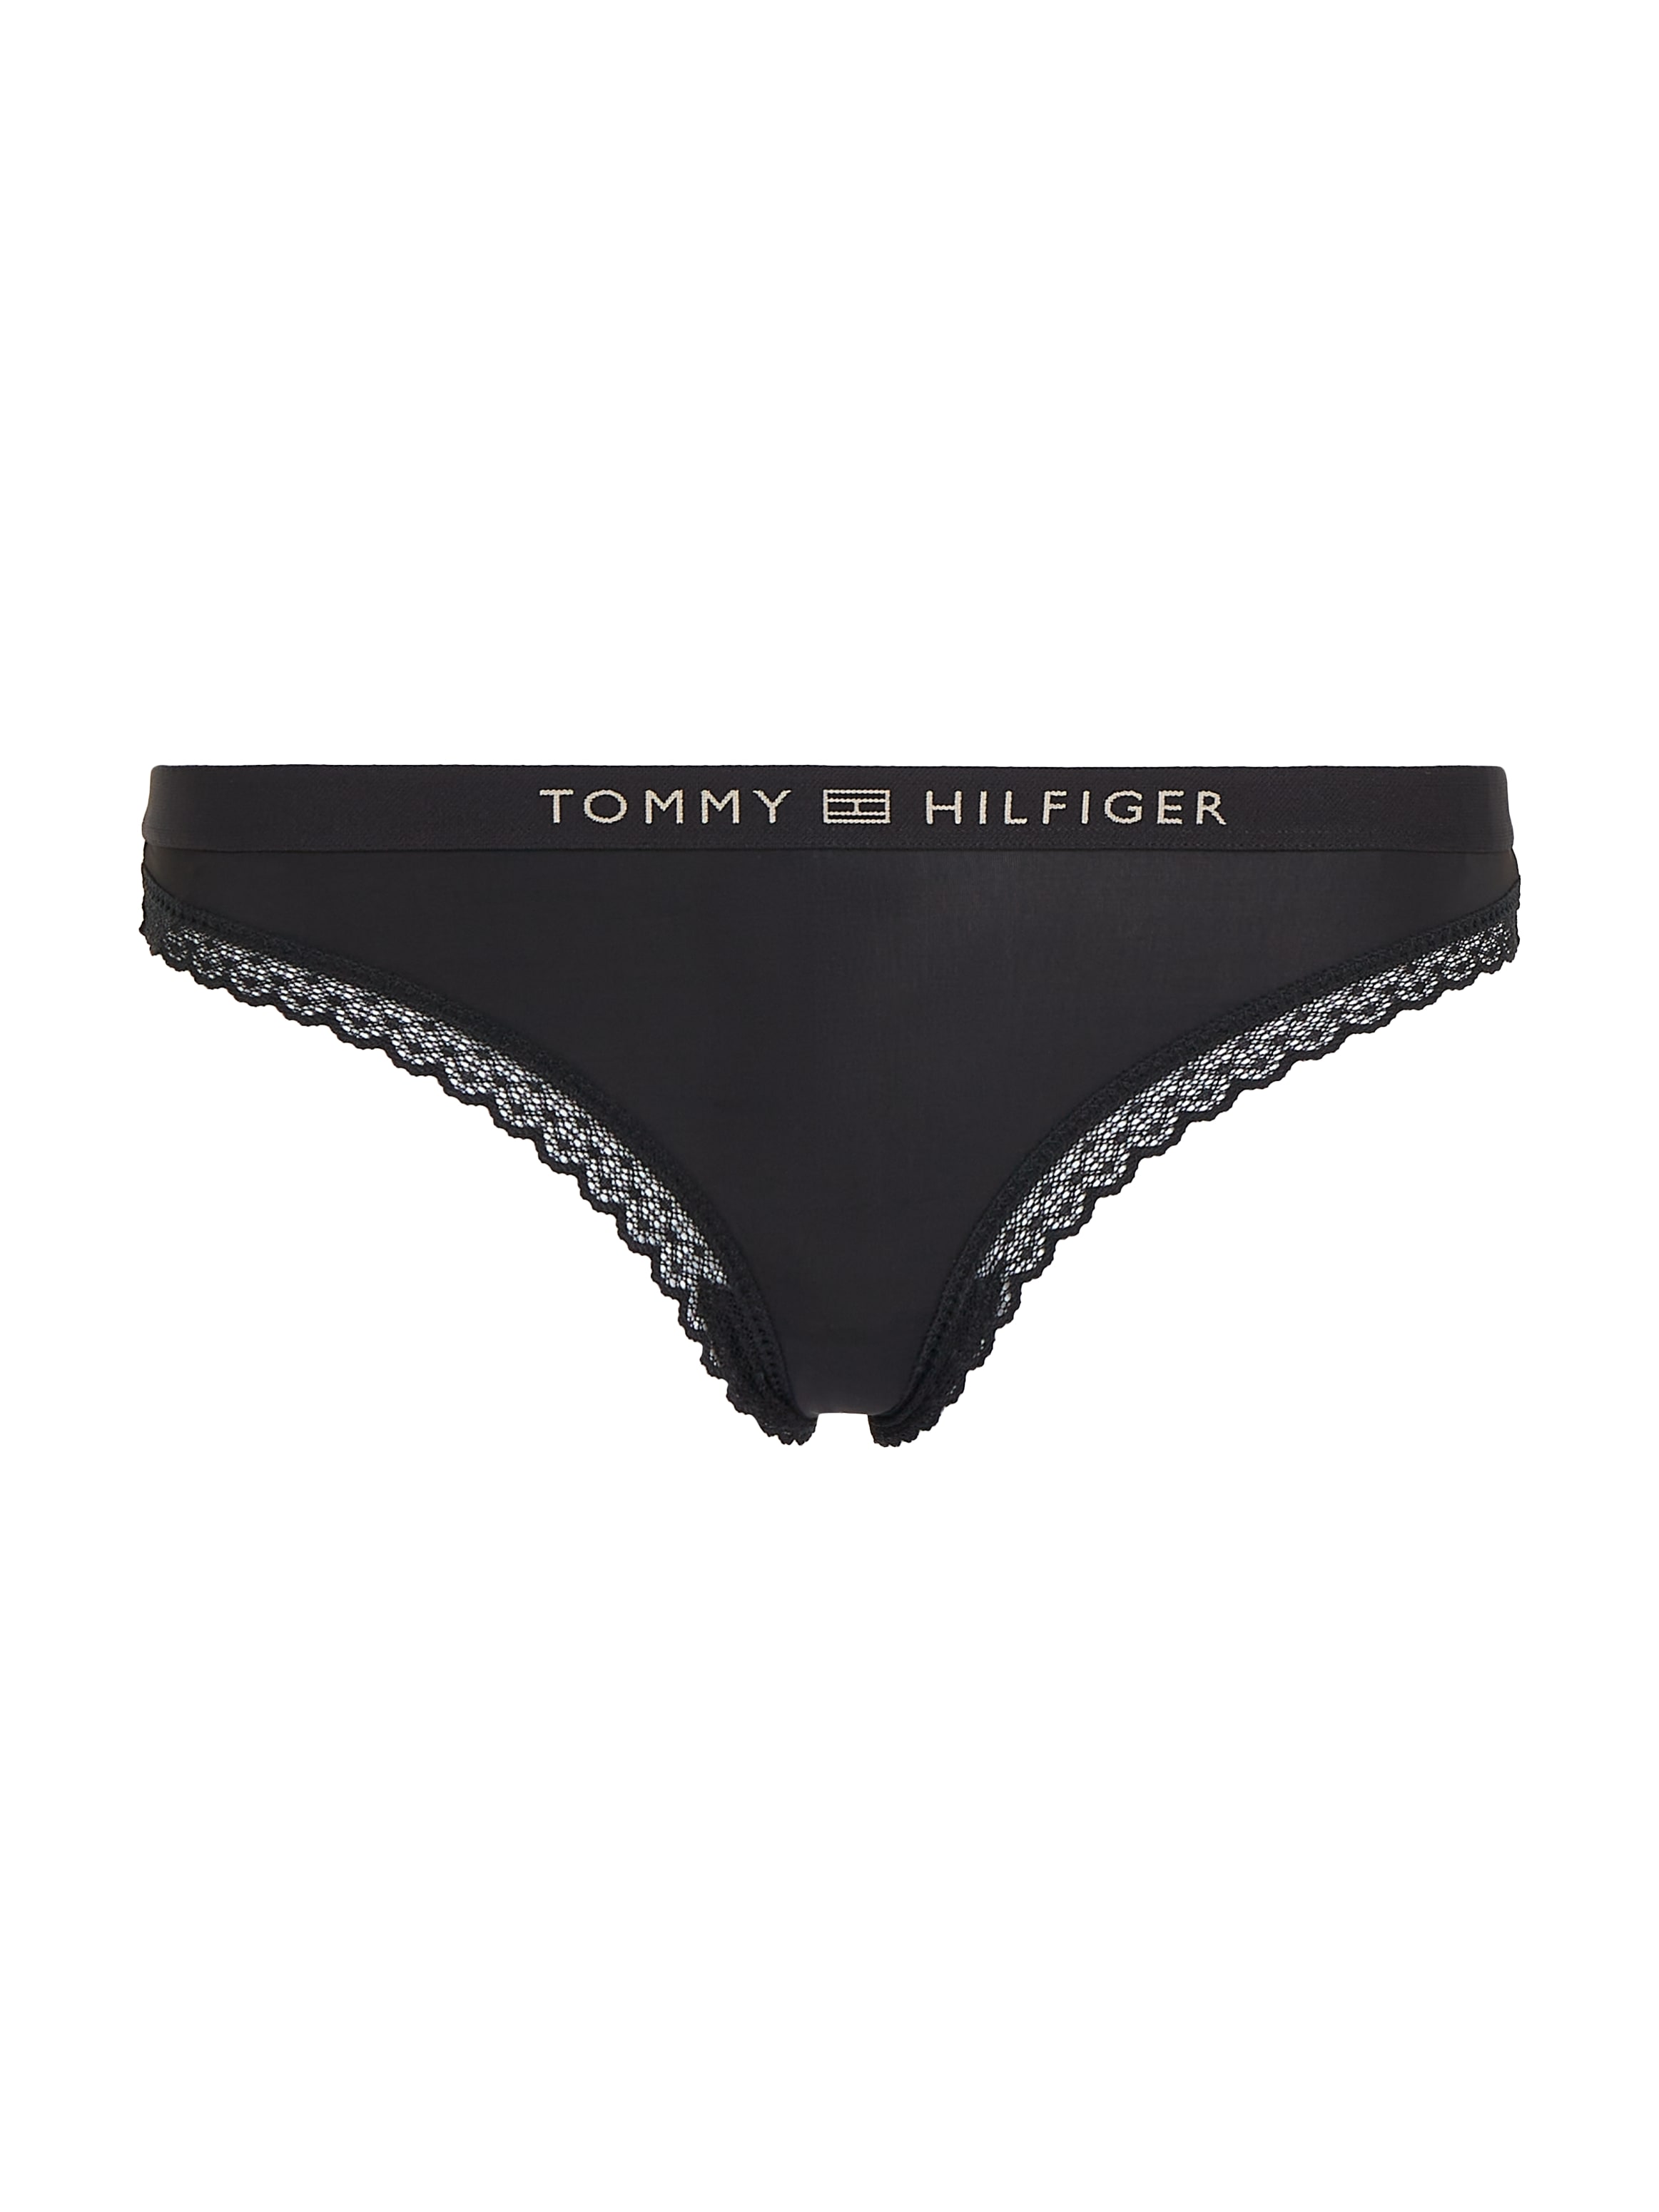 Tommy Hilfiger Underwear T-String »THONG«, mit Tommy Hilfiger Markenlabel